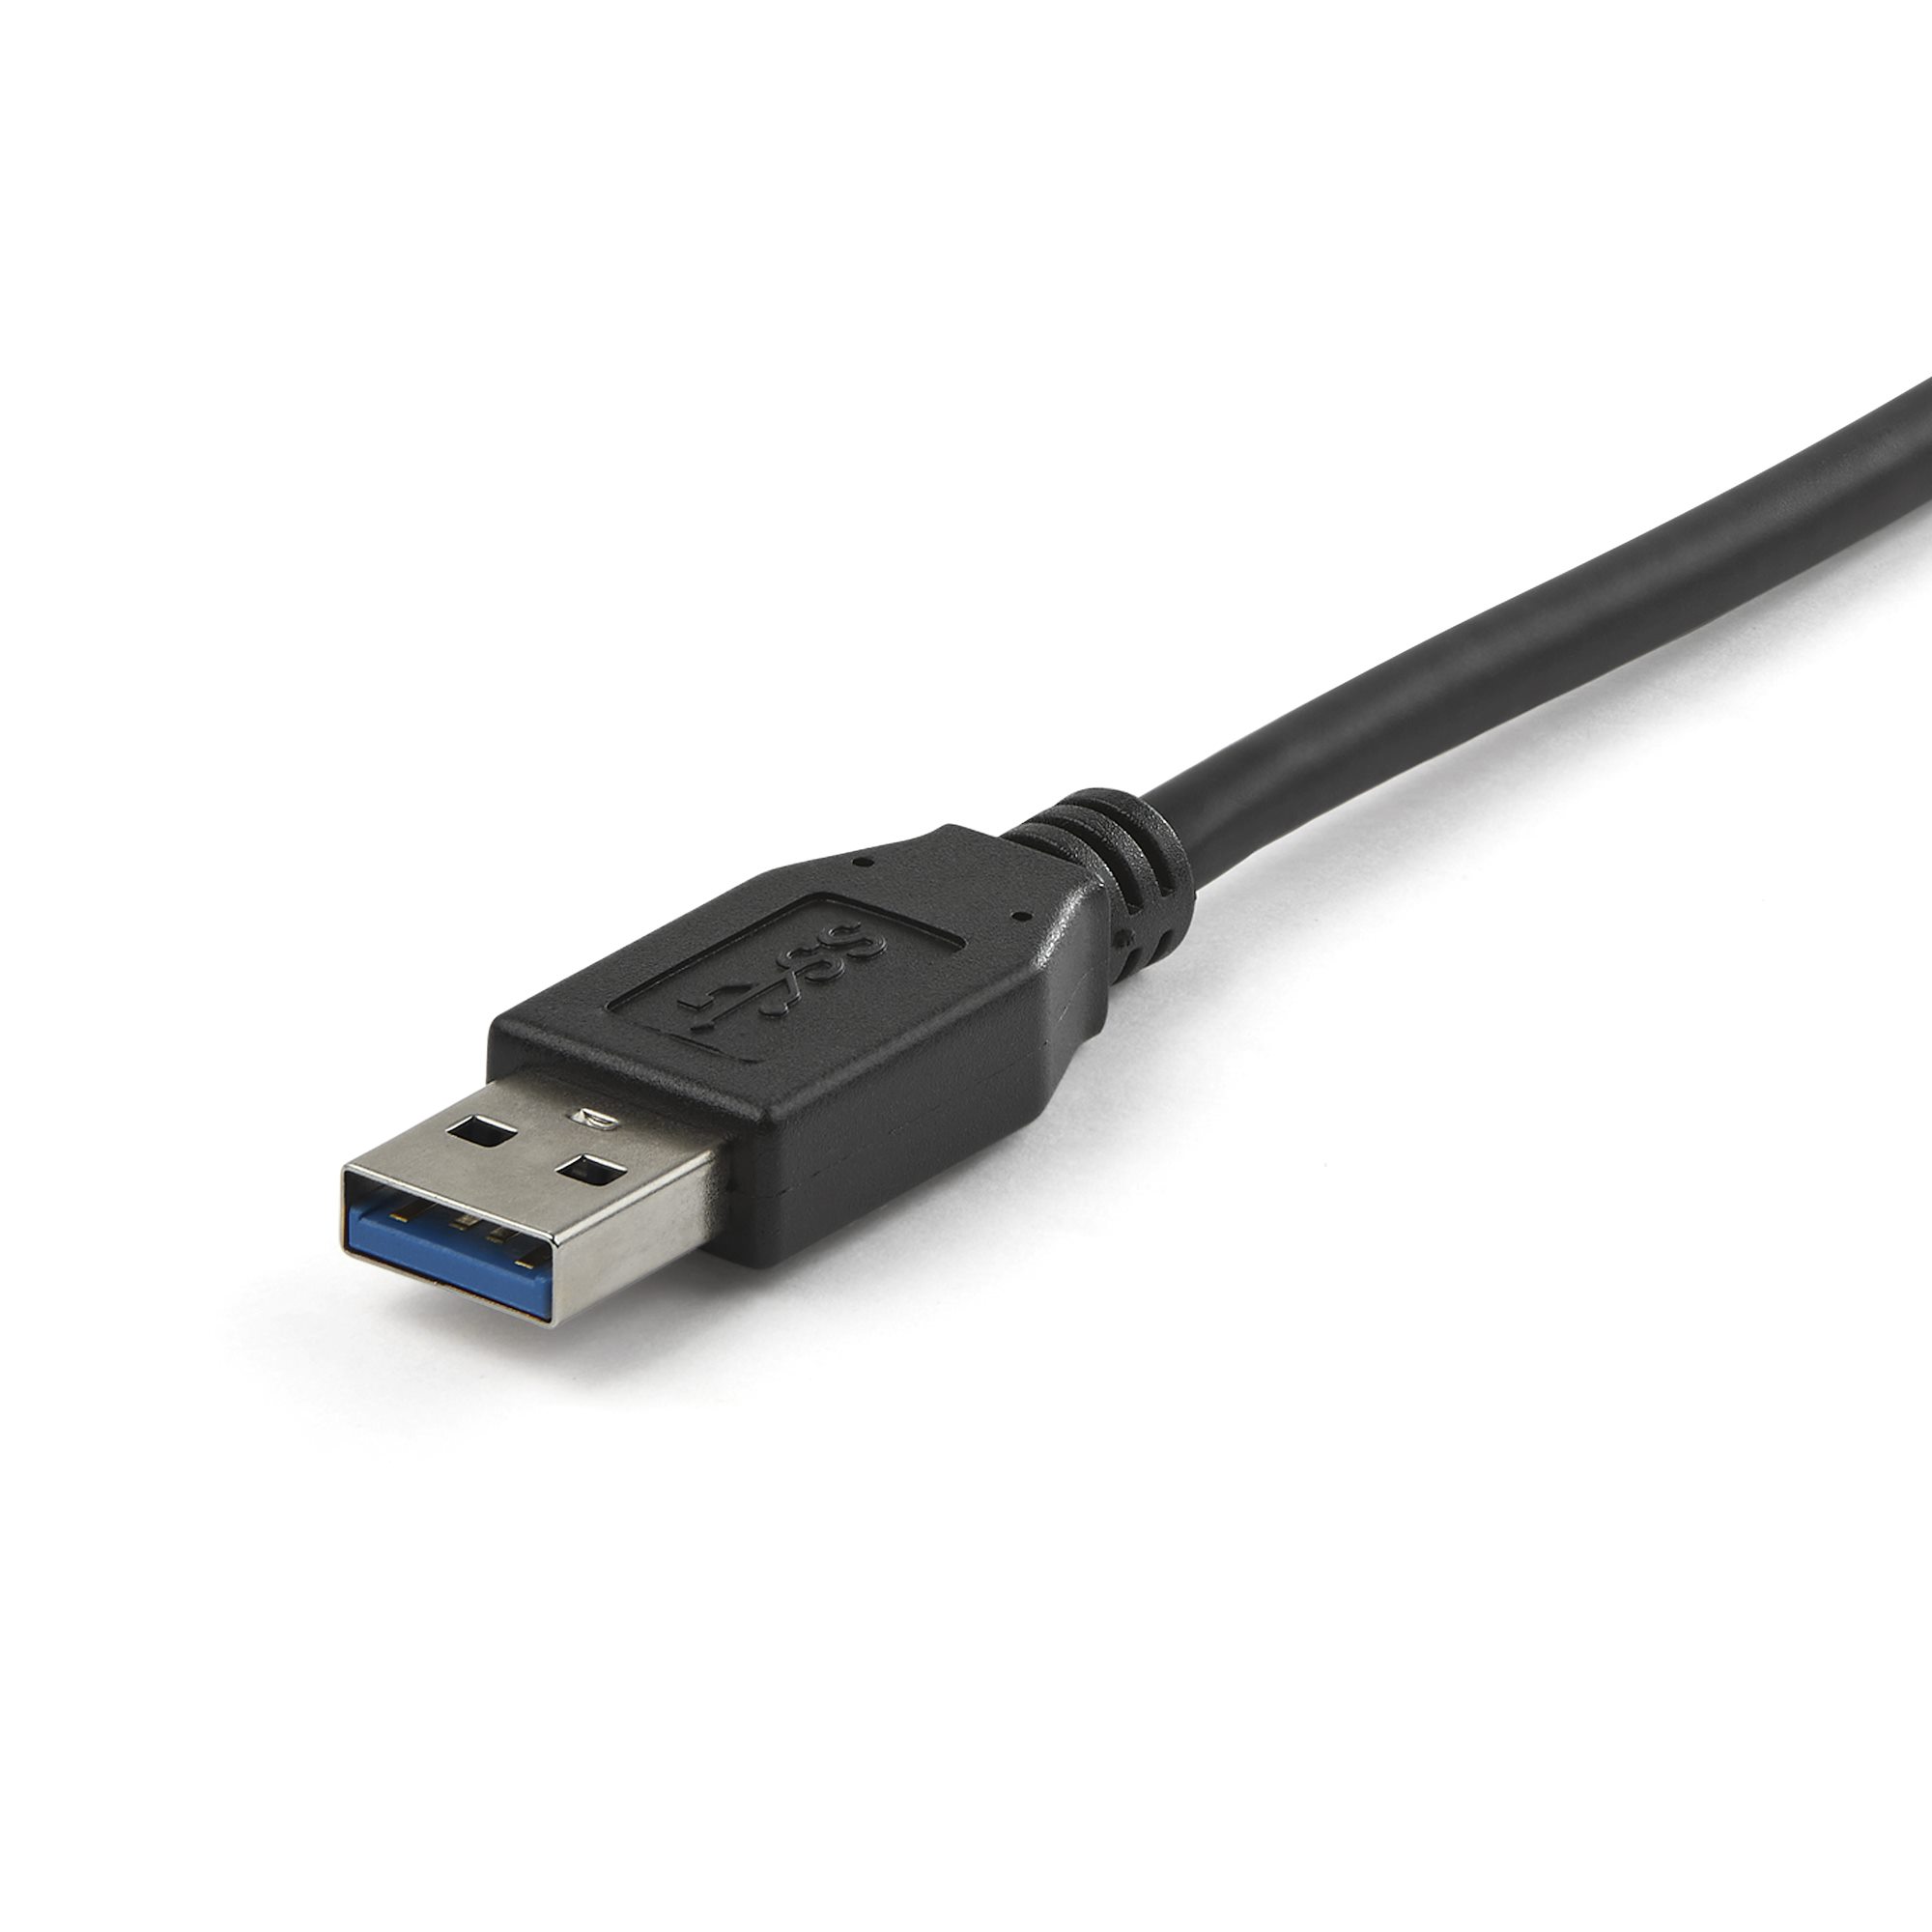 El cable SATA 3 siempre es más rápido que el USB 3? - Quora